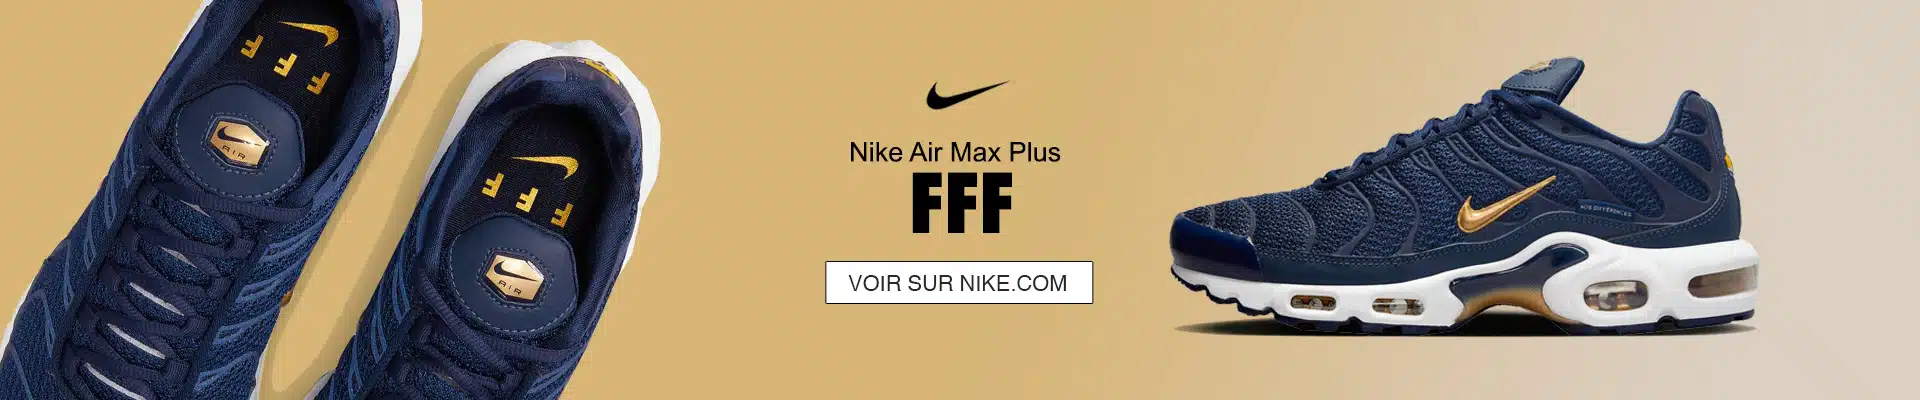 Air Max Plus FFF